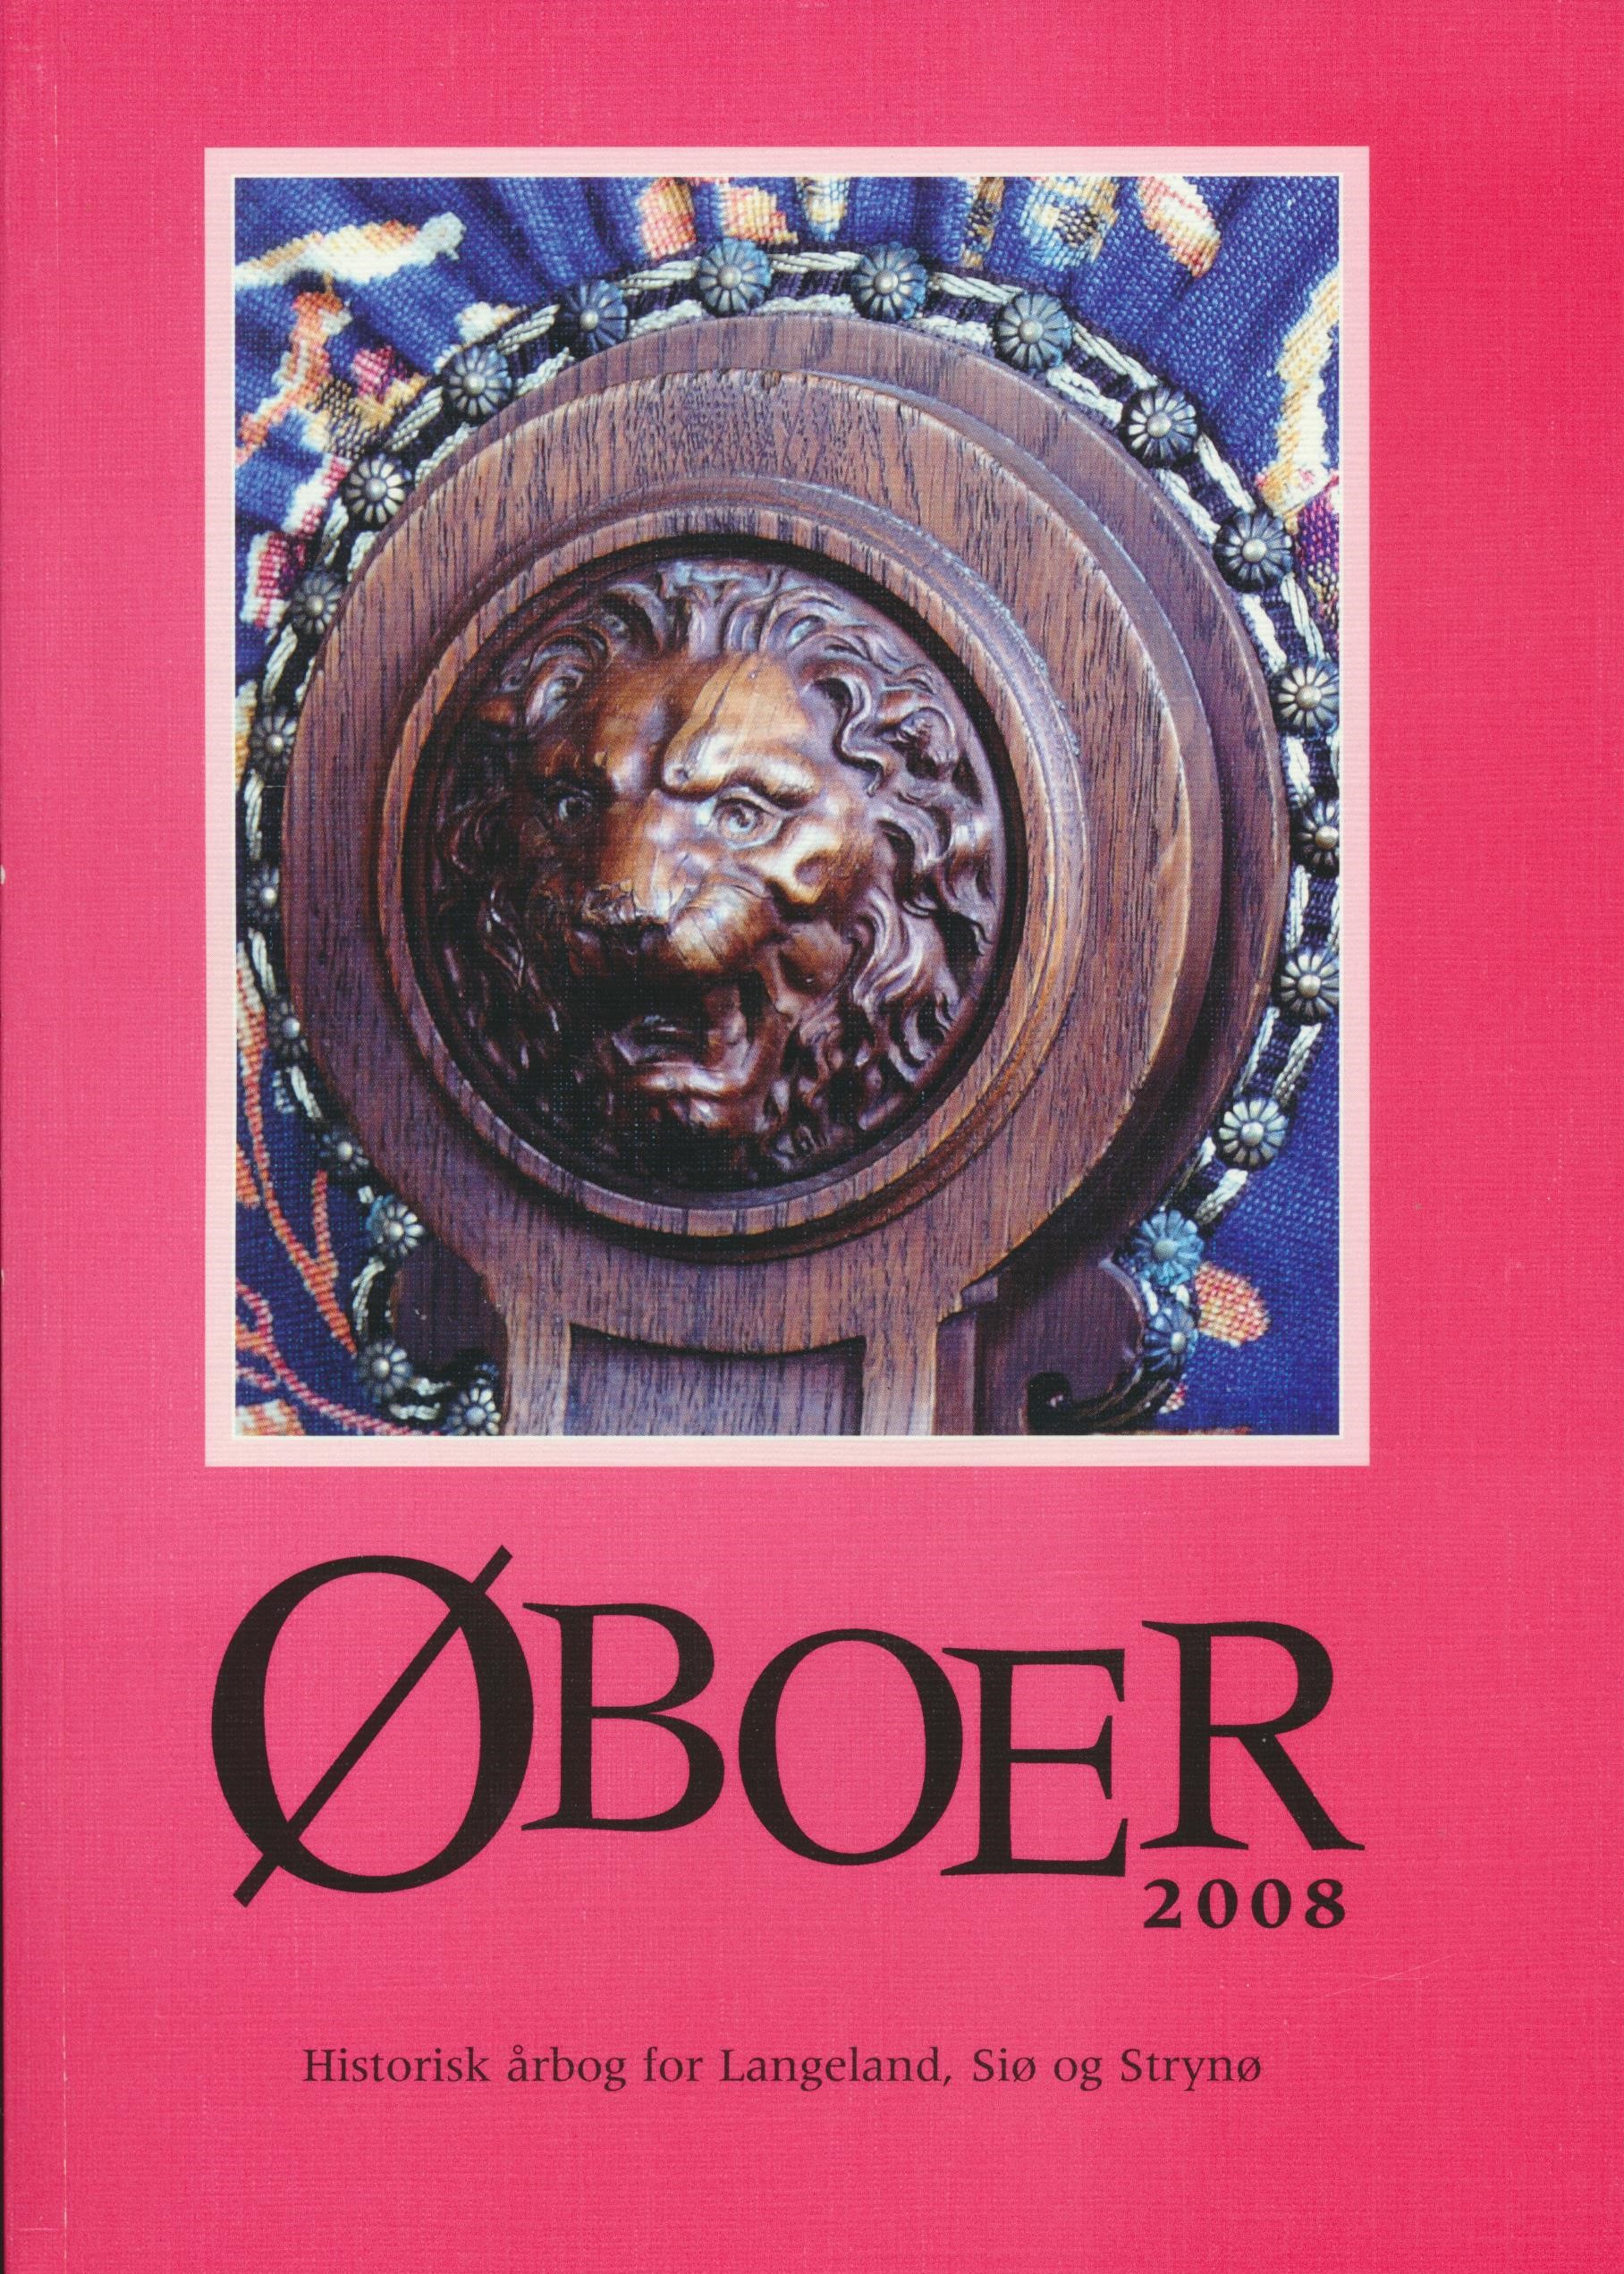 Oboer 2008